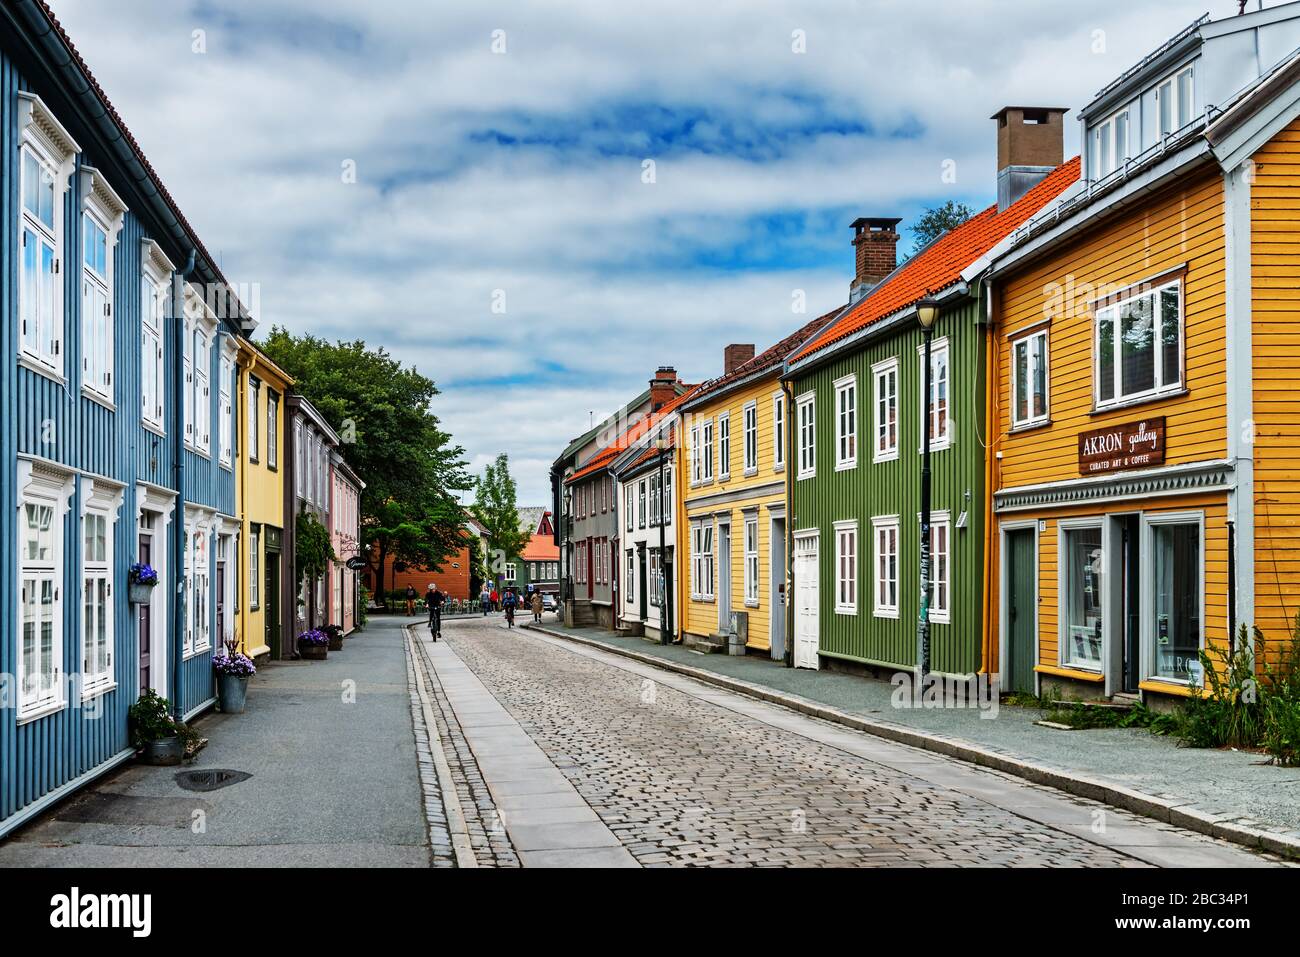 Bâtiments en bois colorés dans la rue, Norvège Banque D'Images